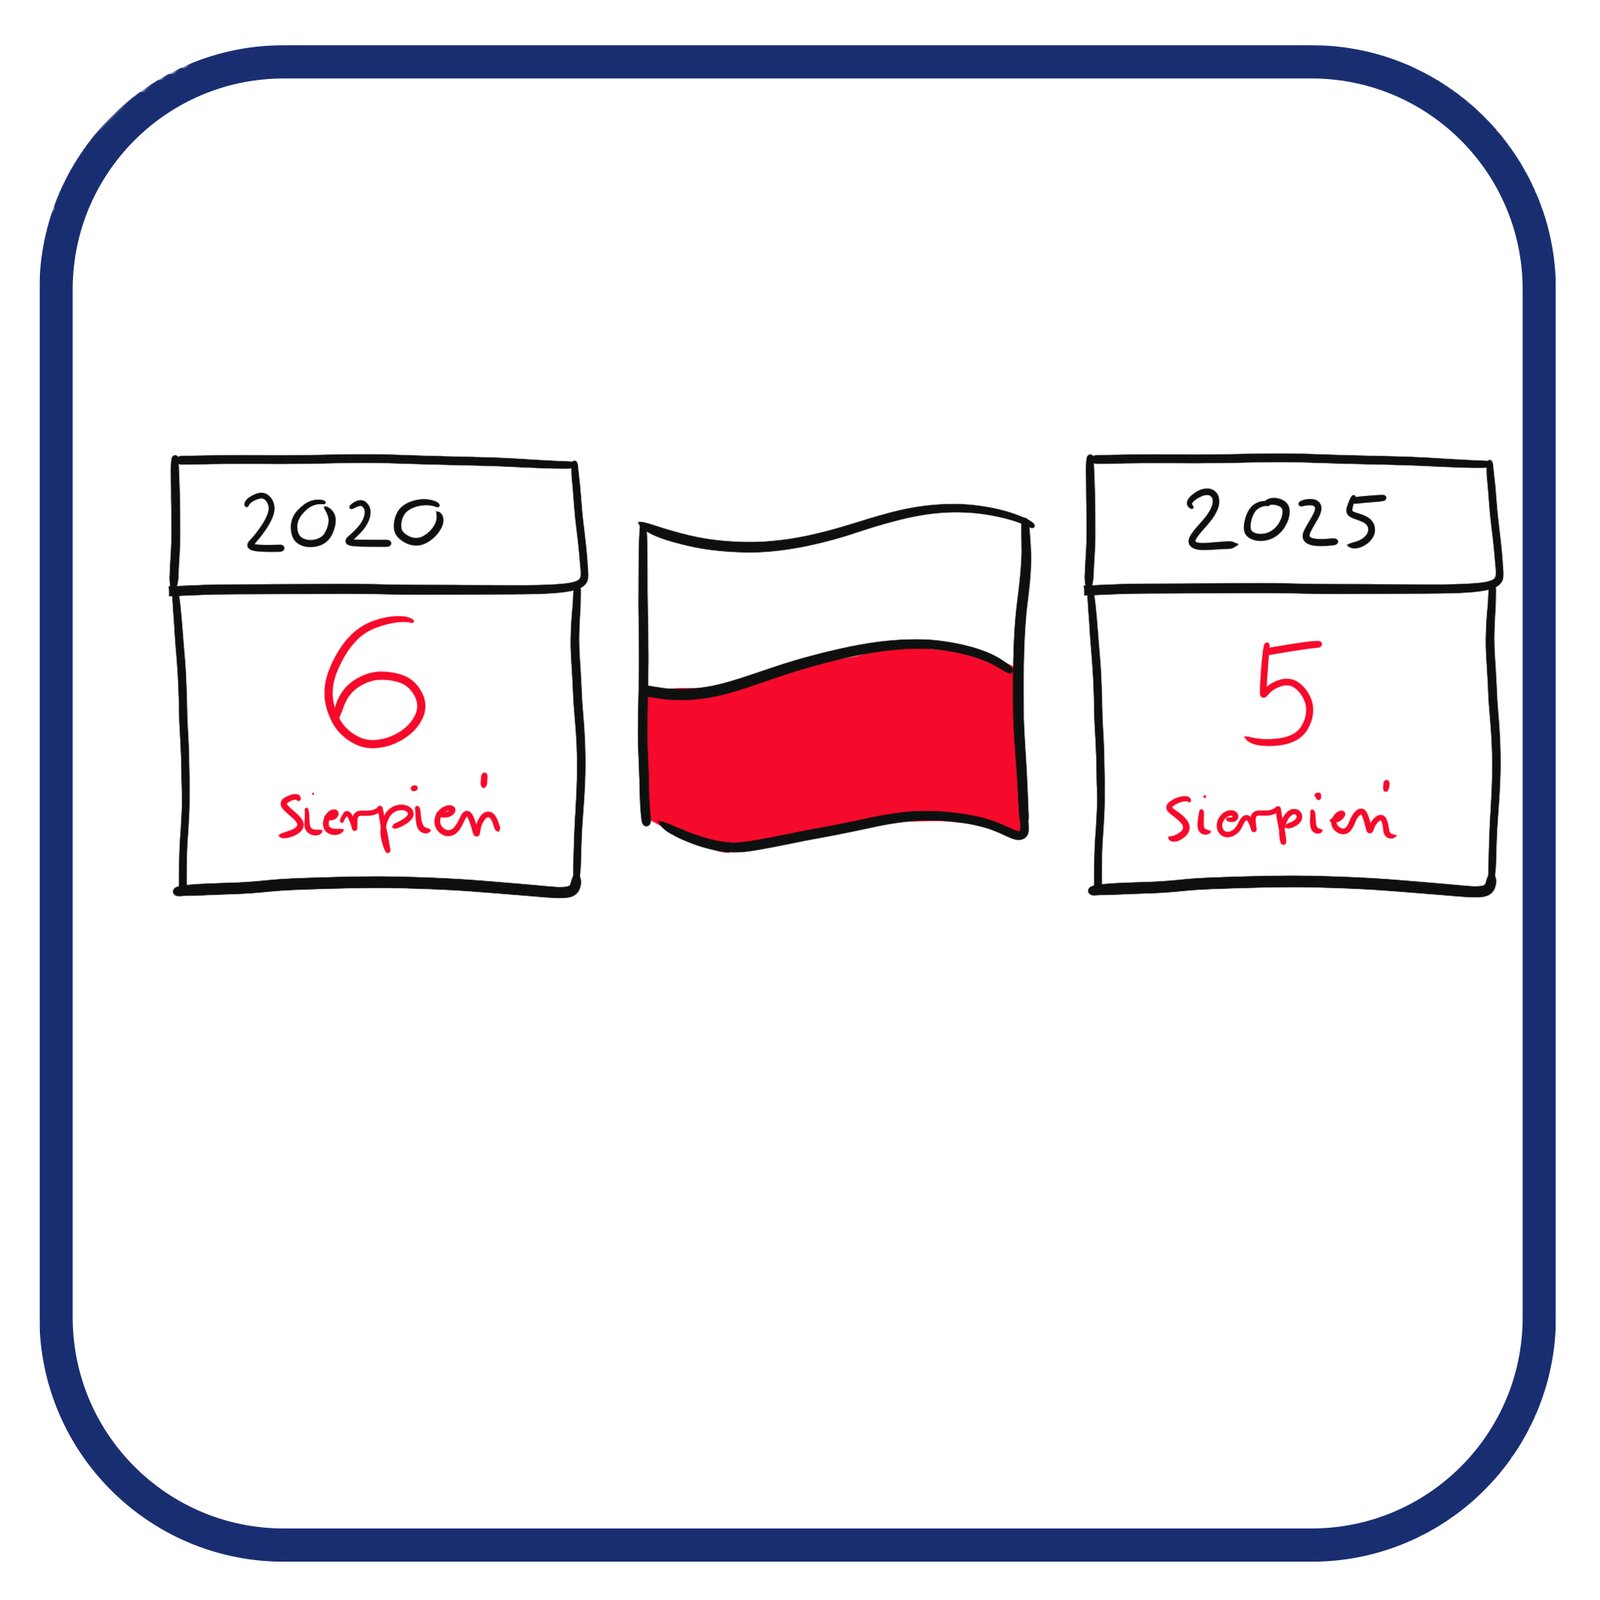 2 kartki: Od lewej kartka z zapisem początku kadencji – 6 sierpień 2020. Na środku biało-czerwona flaga, po prawej stronie kartka z zapisem końca kadencji Prezydenta RP – 5 sierpień 2025.